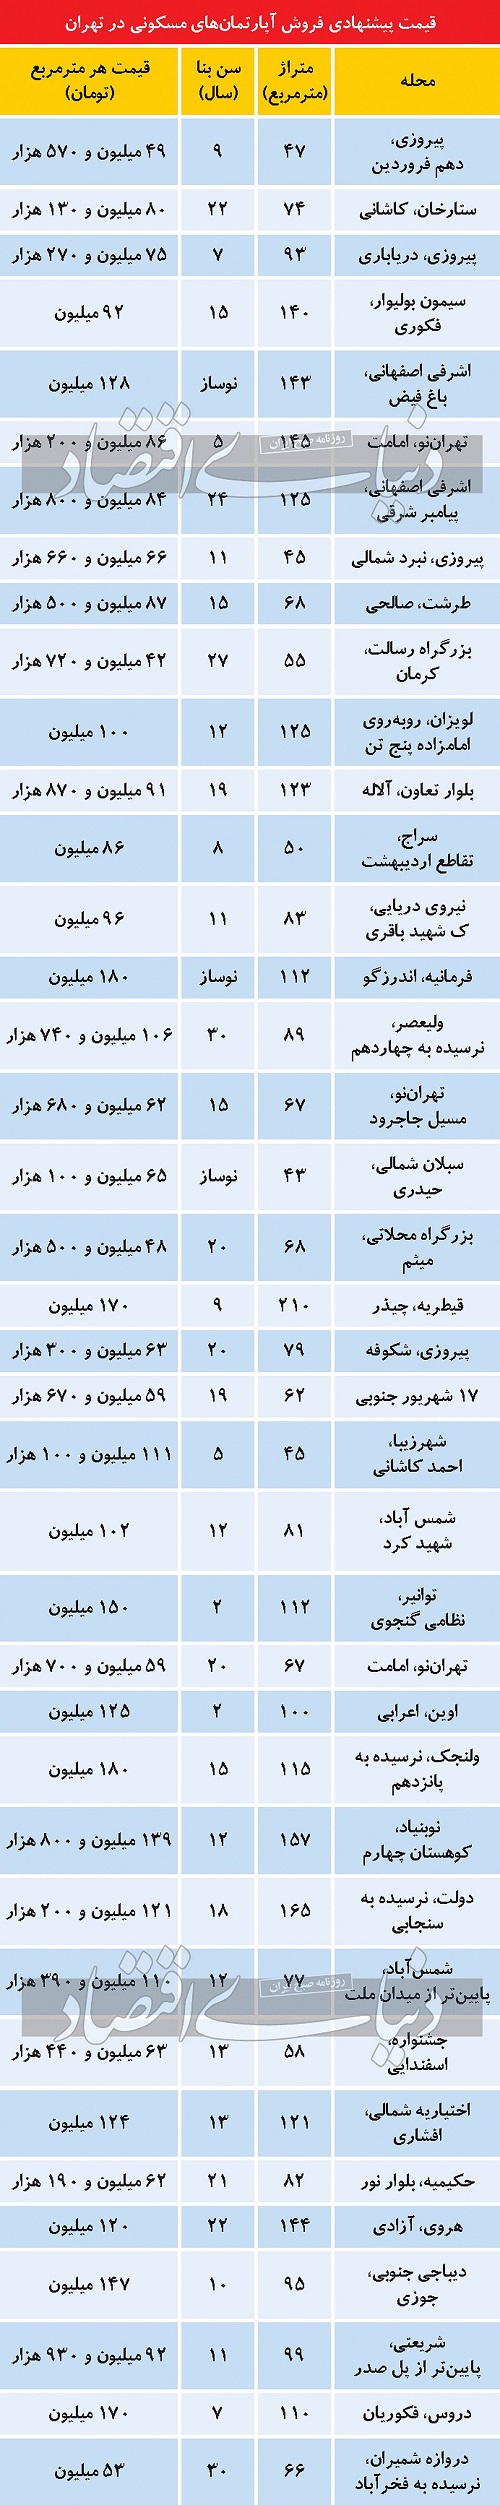 قیمت پیشنهادی آپارتمان در تهران